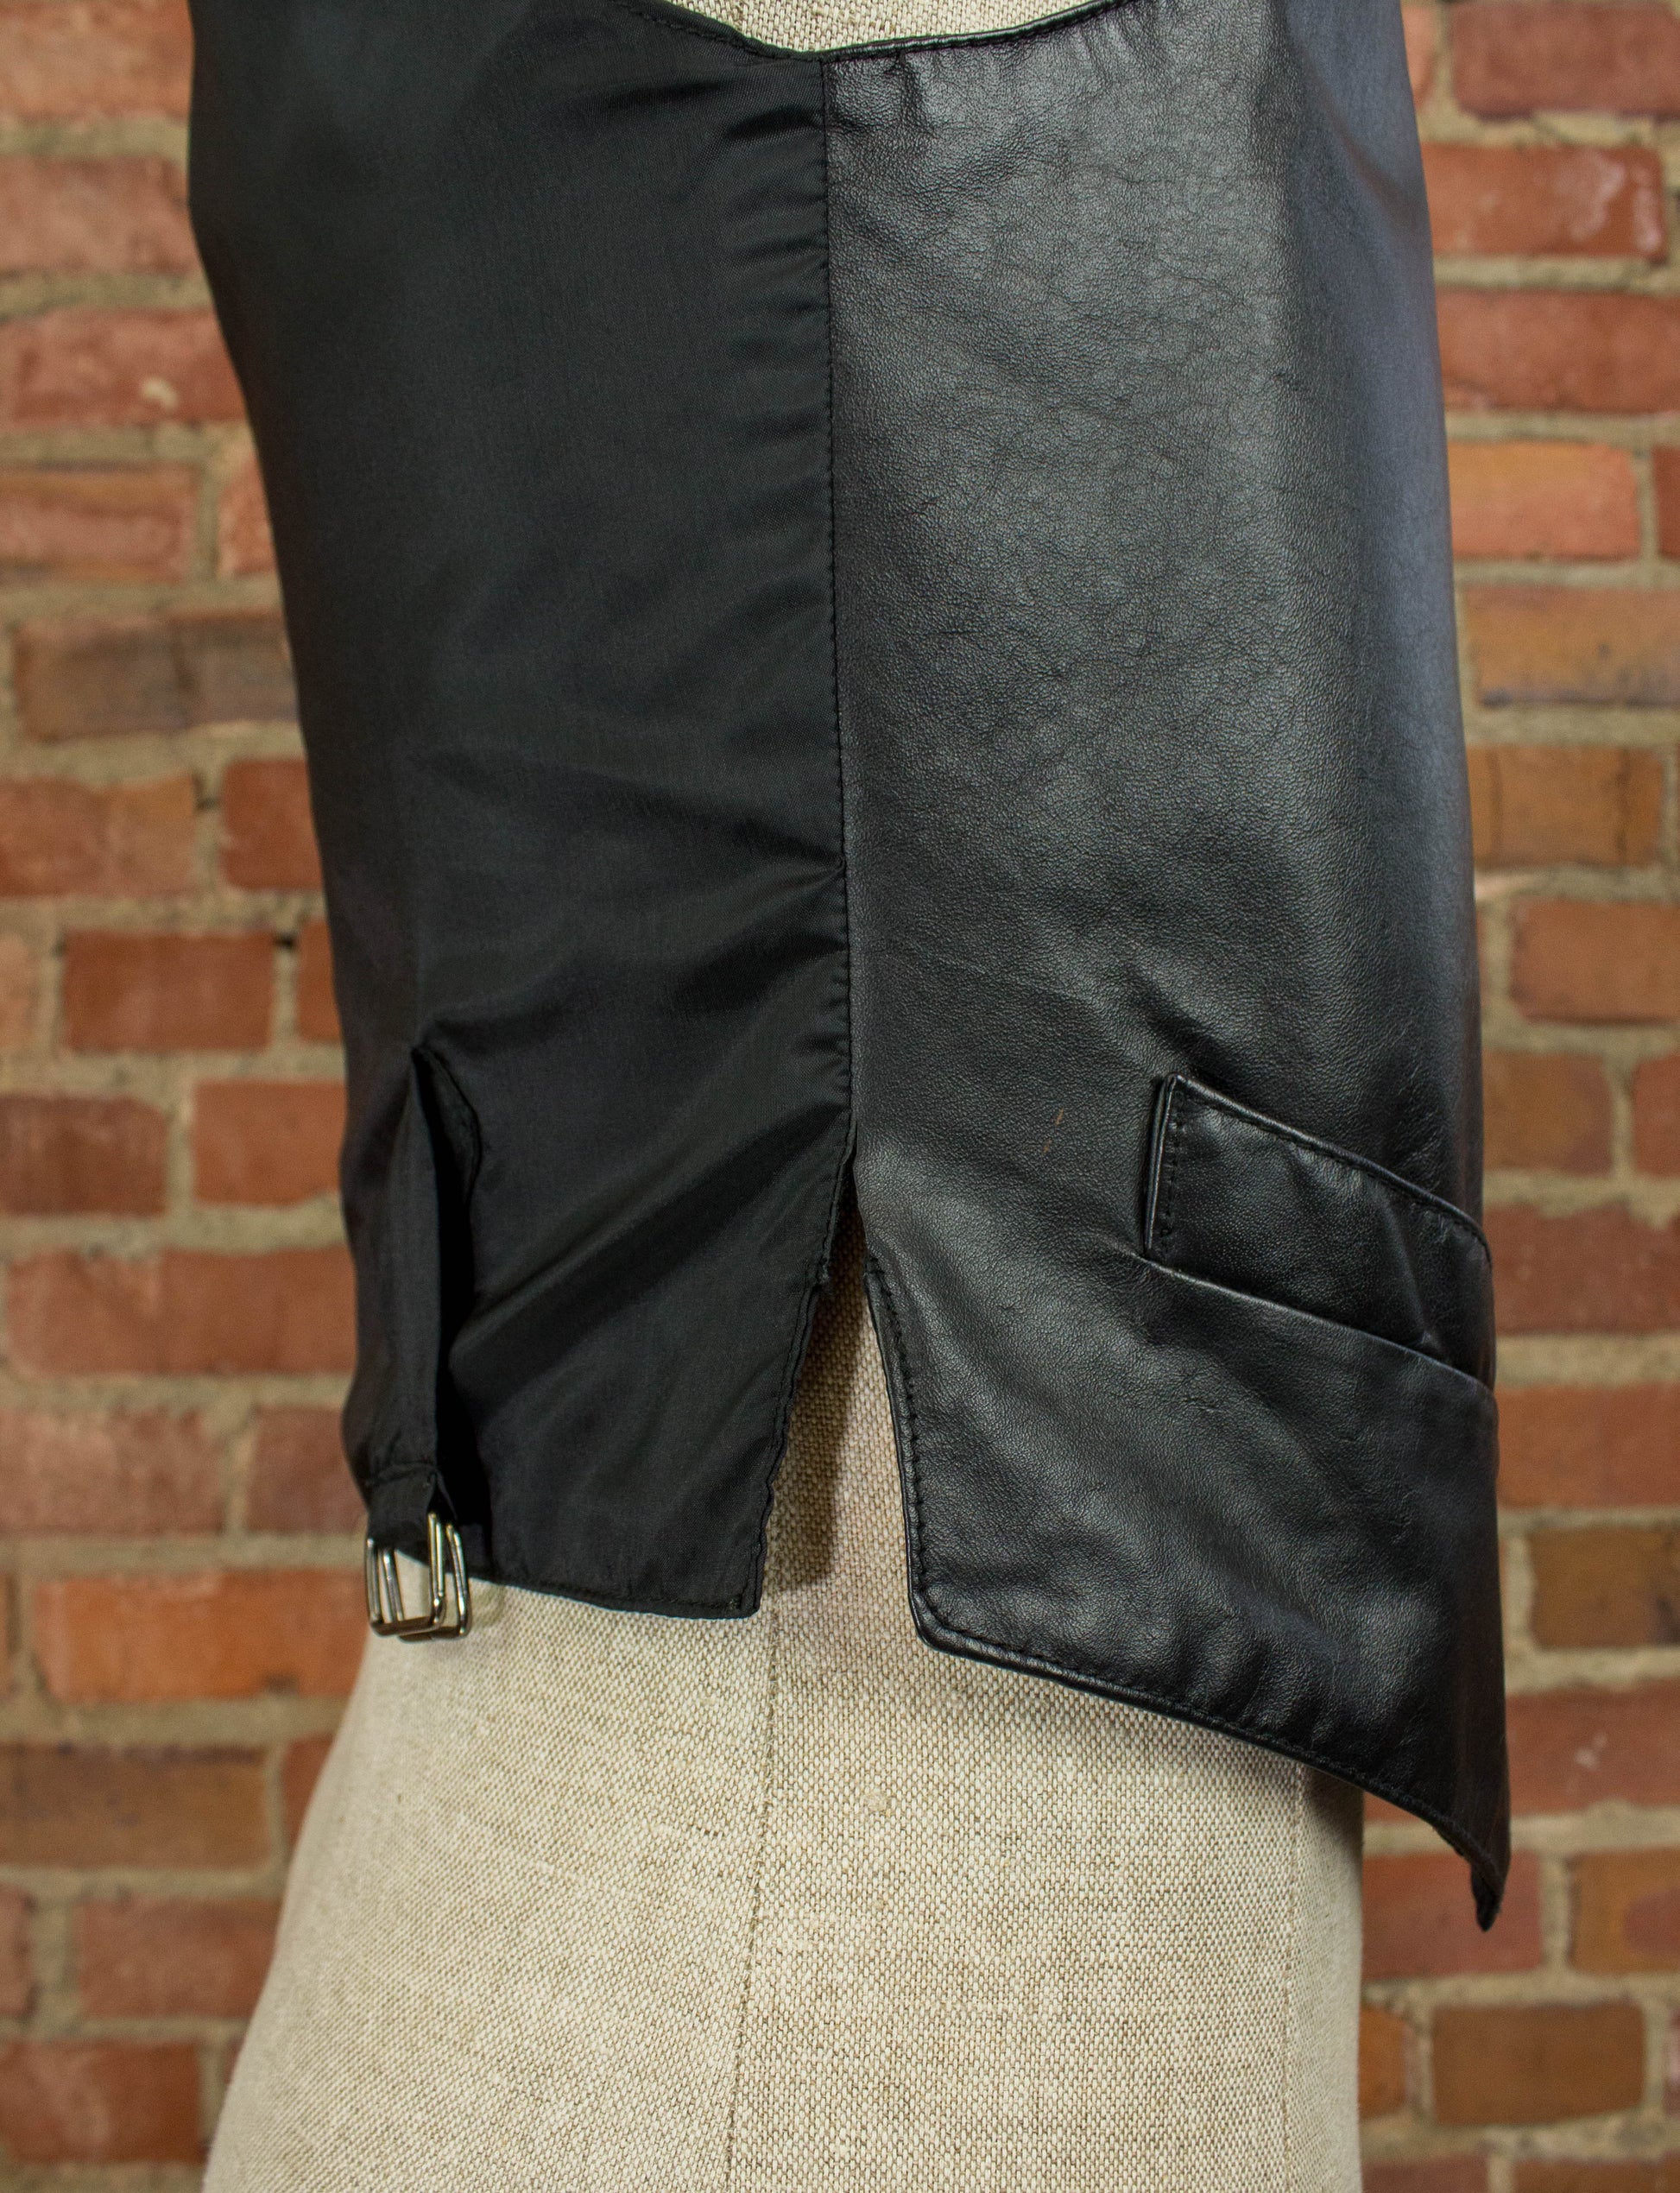 Vintage Wilsons Leather Vest 90s Black Waistcoat Small-Medium